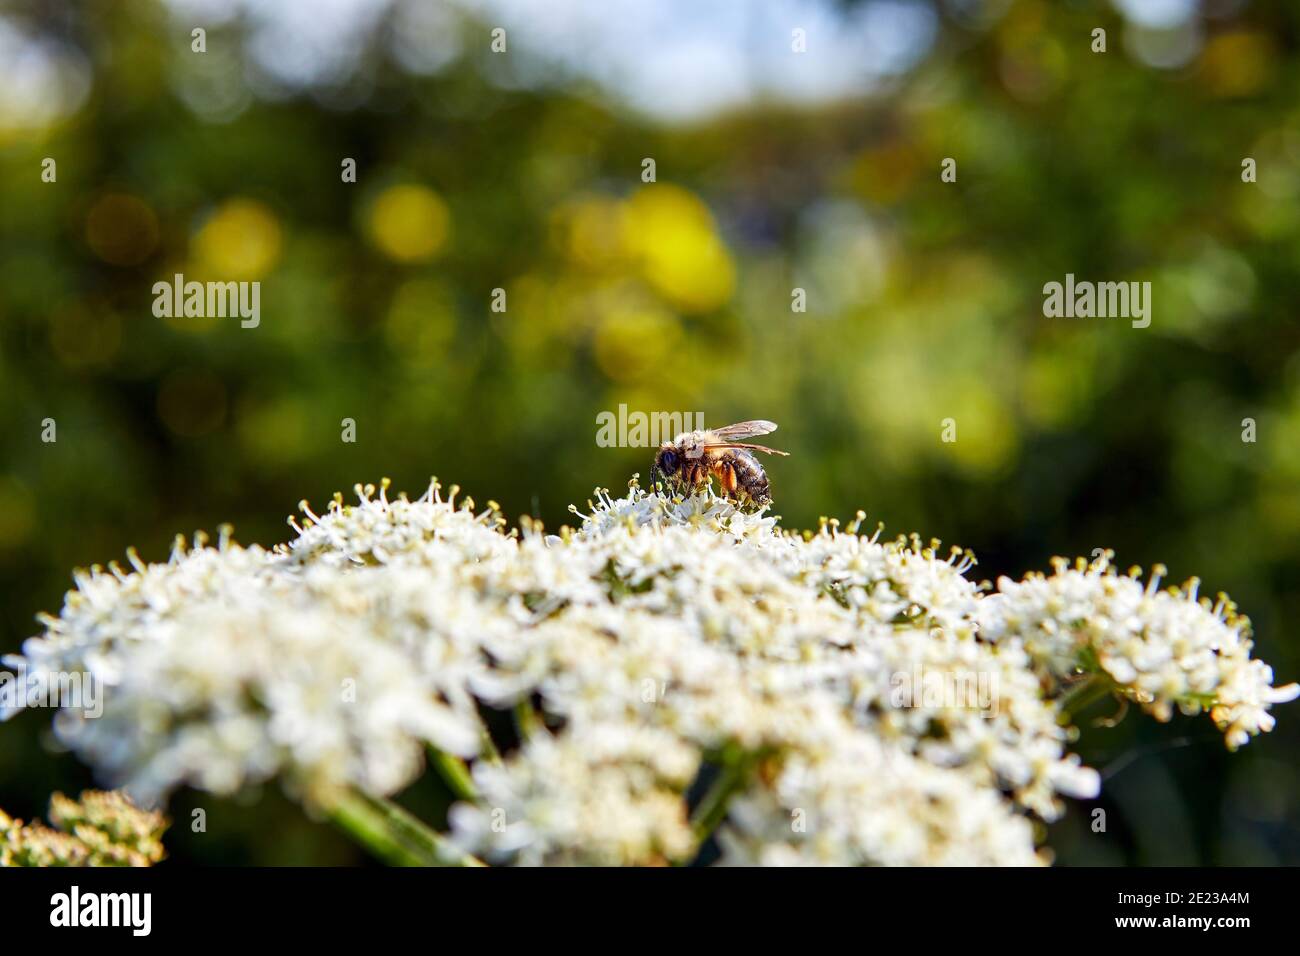 Bild von KuhPetersilie Blüten im Frühjahr mit einer wilden Biene sammeln Pollen, flache Tiefe des Feldes mit grünen und blauen Hintergrund. Stockfoto